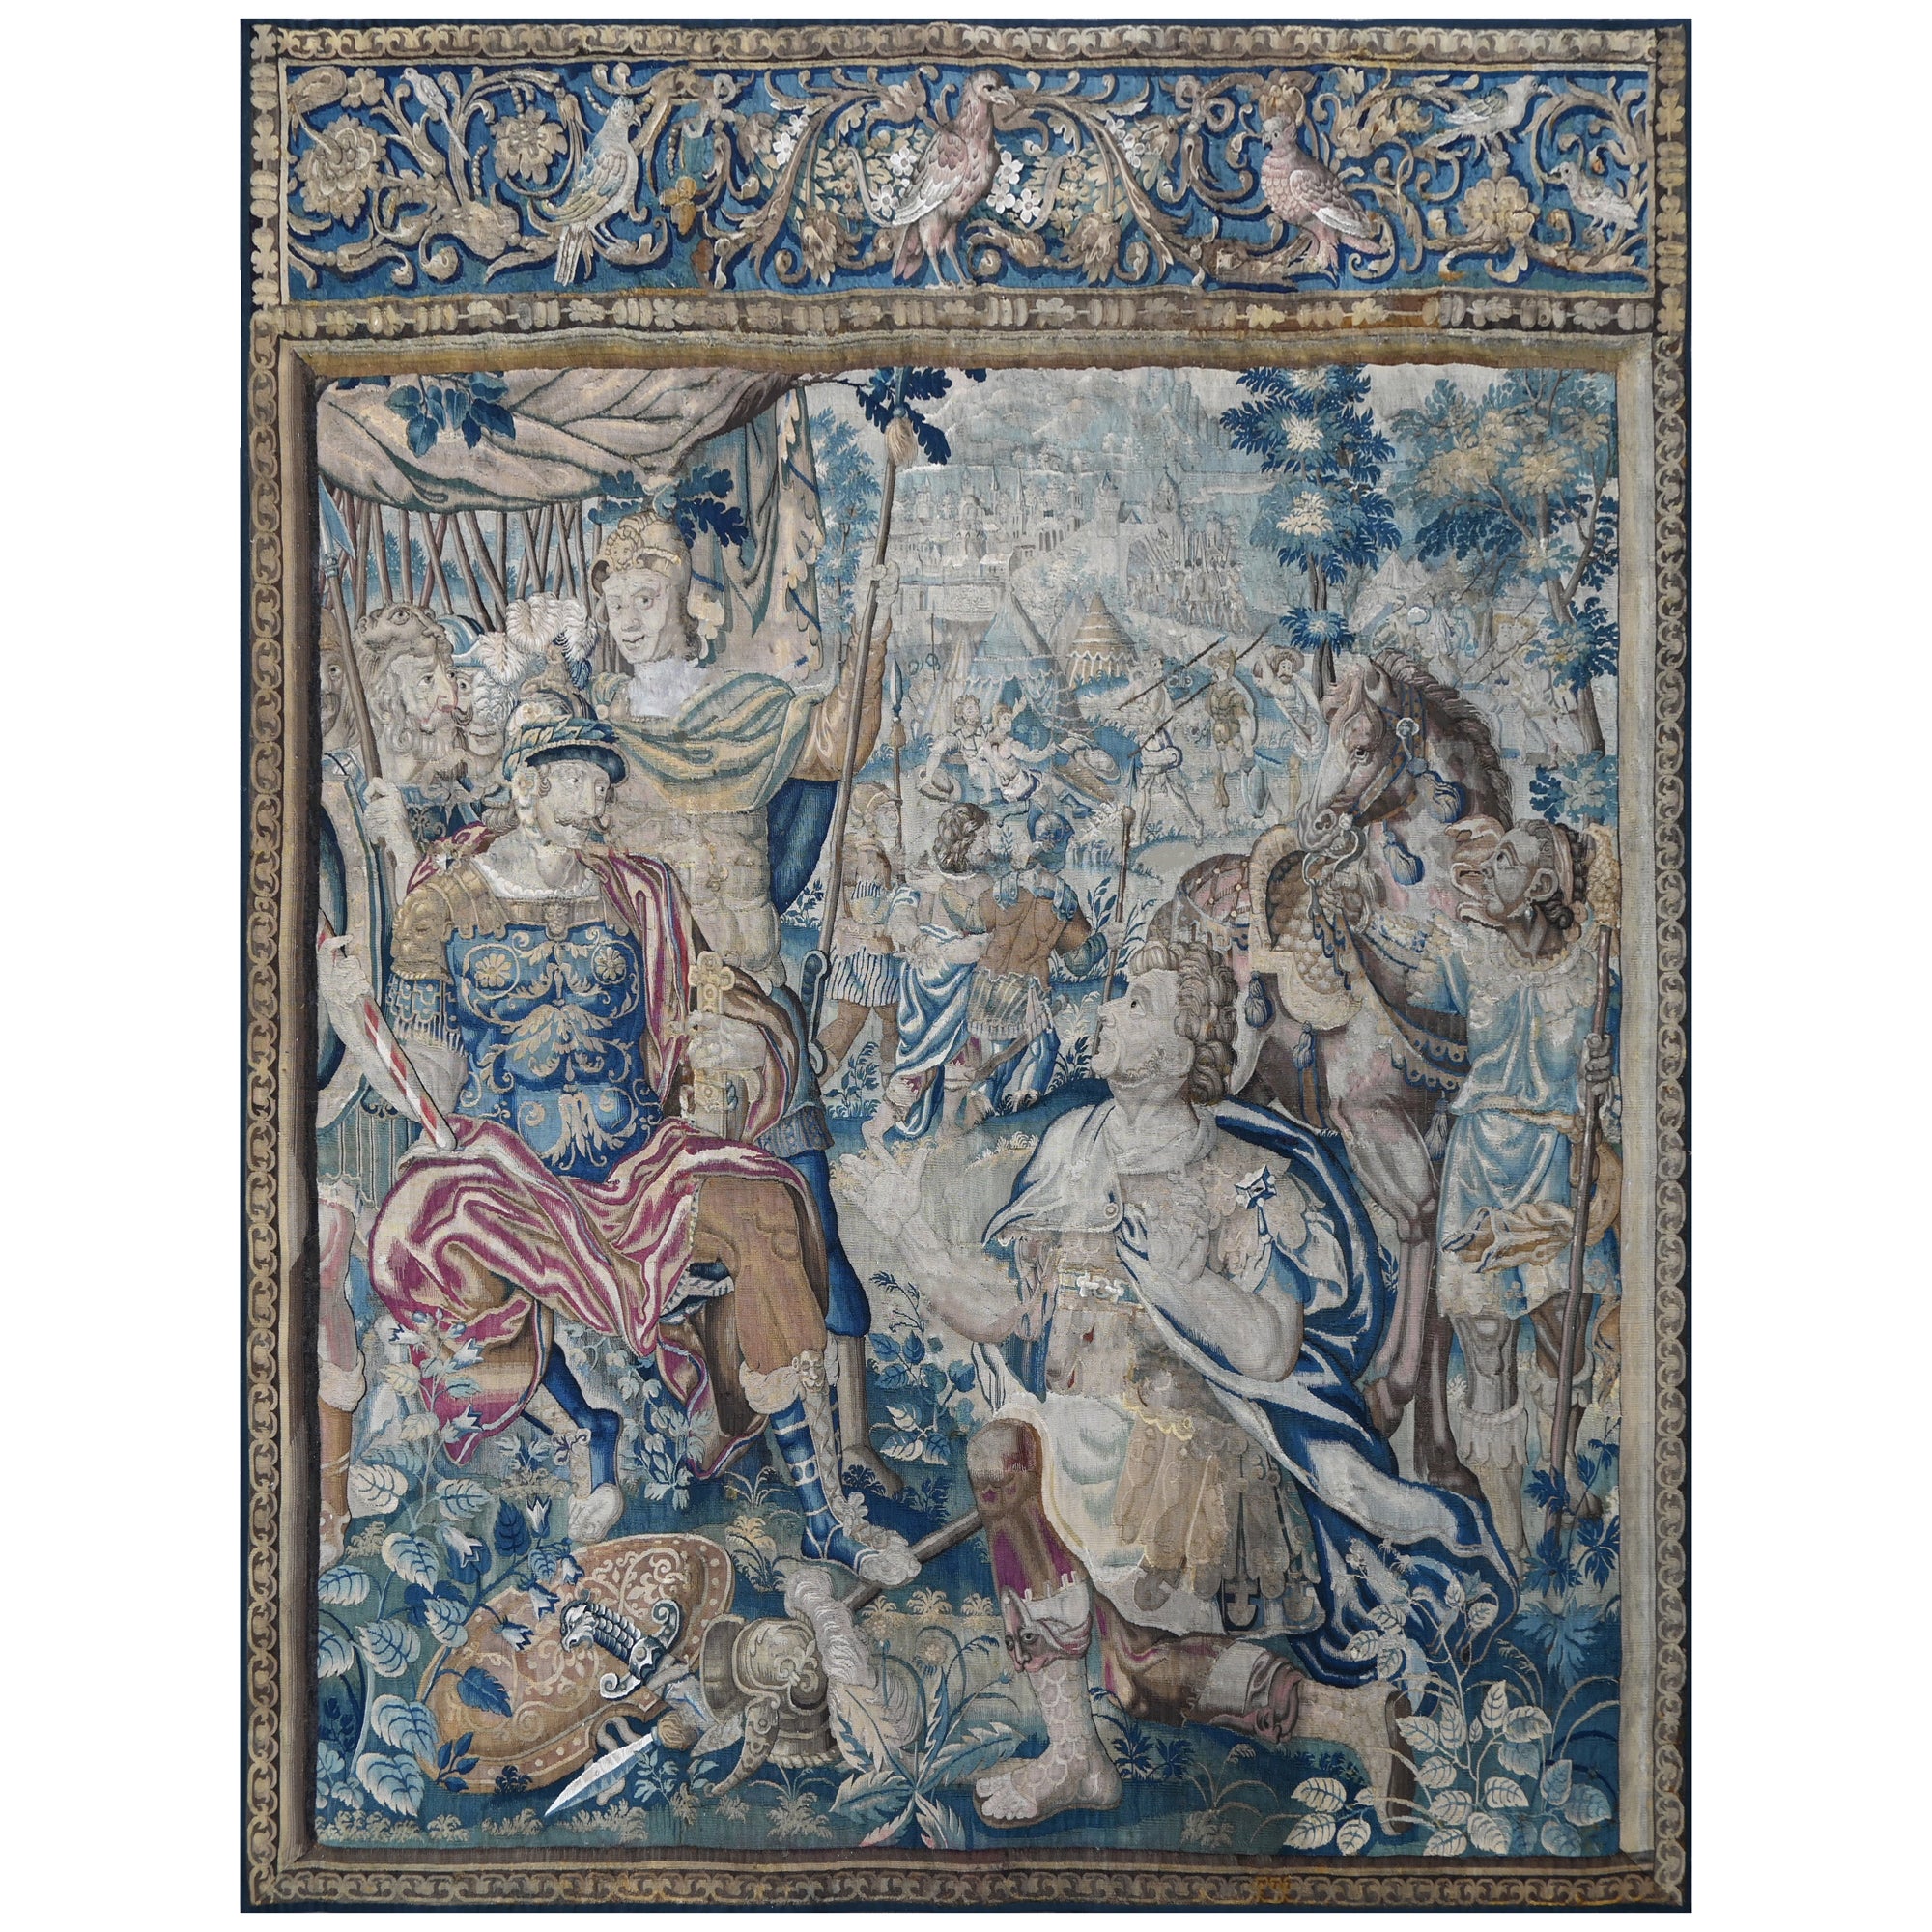 Wandteppich aus Brüsseler Manufaktur - Mitte 17. Jahrhundert - L2m40xh2m80 - N° 1375